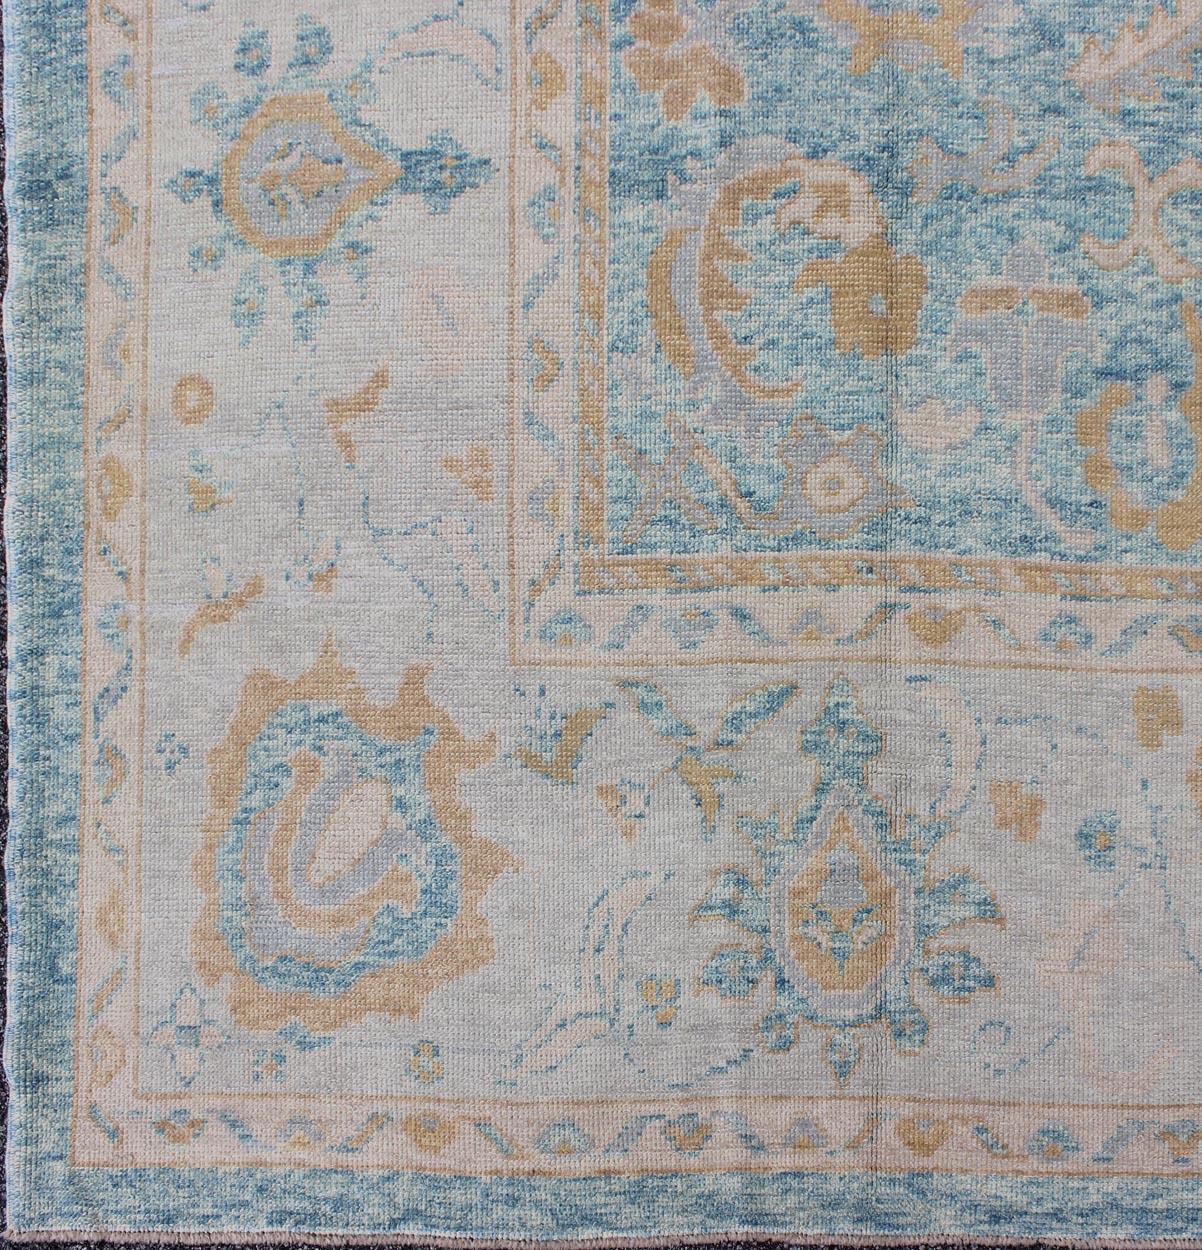 Oushak-Teppich aus Angora in Blau, Silber, Taupe und Hellbraun aus der Türkei. Keivan Woven Arts / Teppich MSD-3381, Herkunftsland / Art: Türkei / Angora Oushak.
Maße: 10'10 x 12'1.
Dieses Stück aus unserer Angora Collection besteht aus einer